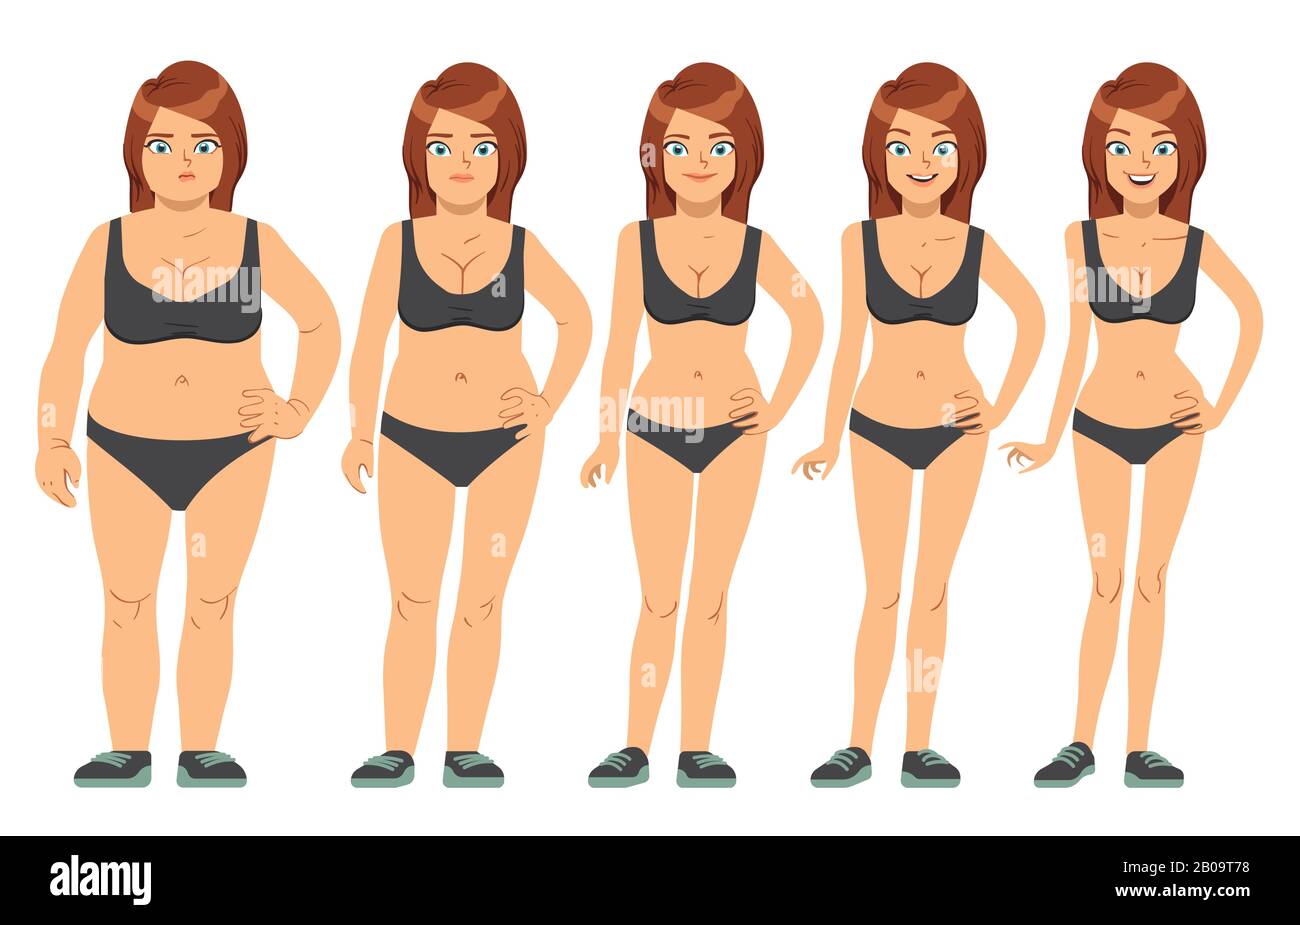 Fille, jeune femme avant et après le régime et la forme physique. Illustration vectorielle des étapes de perte de poids. Figure parfaite femme, illustration de la figure santé mince femme Illustration de Vecteur